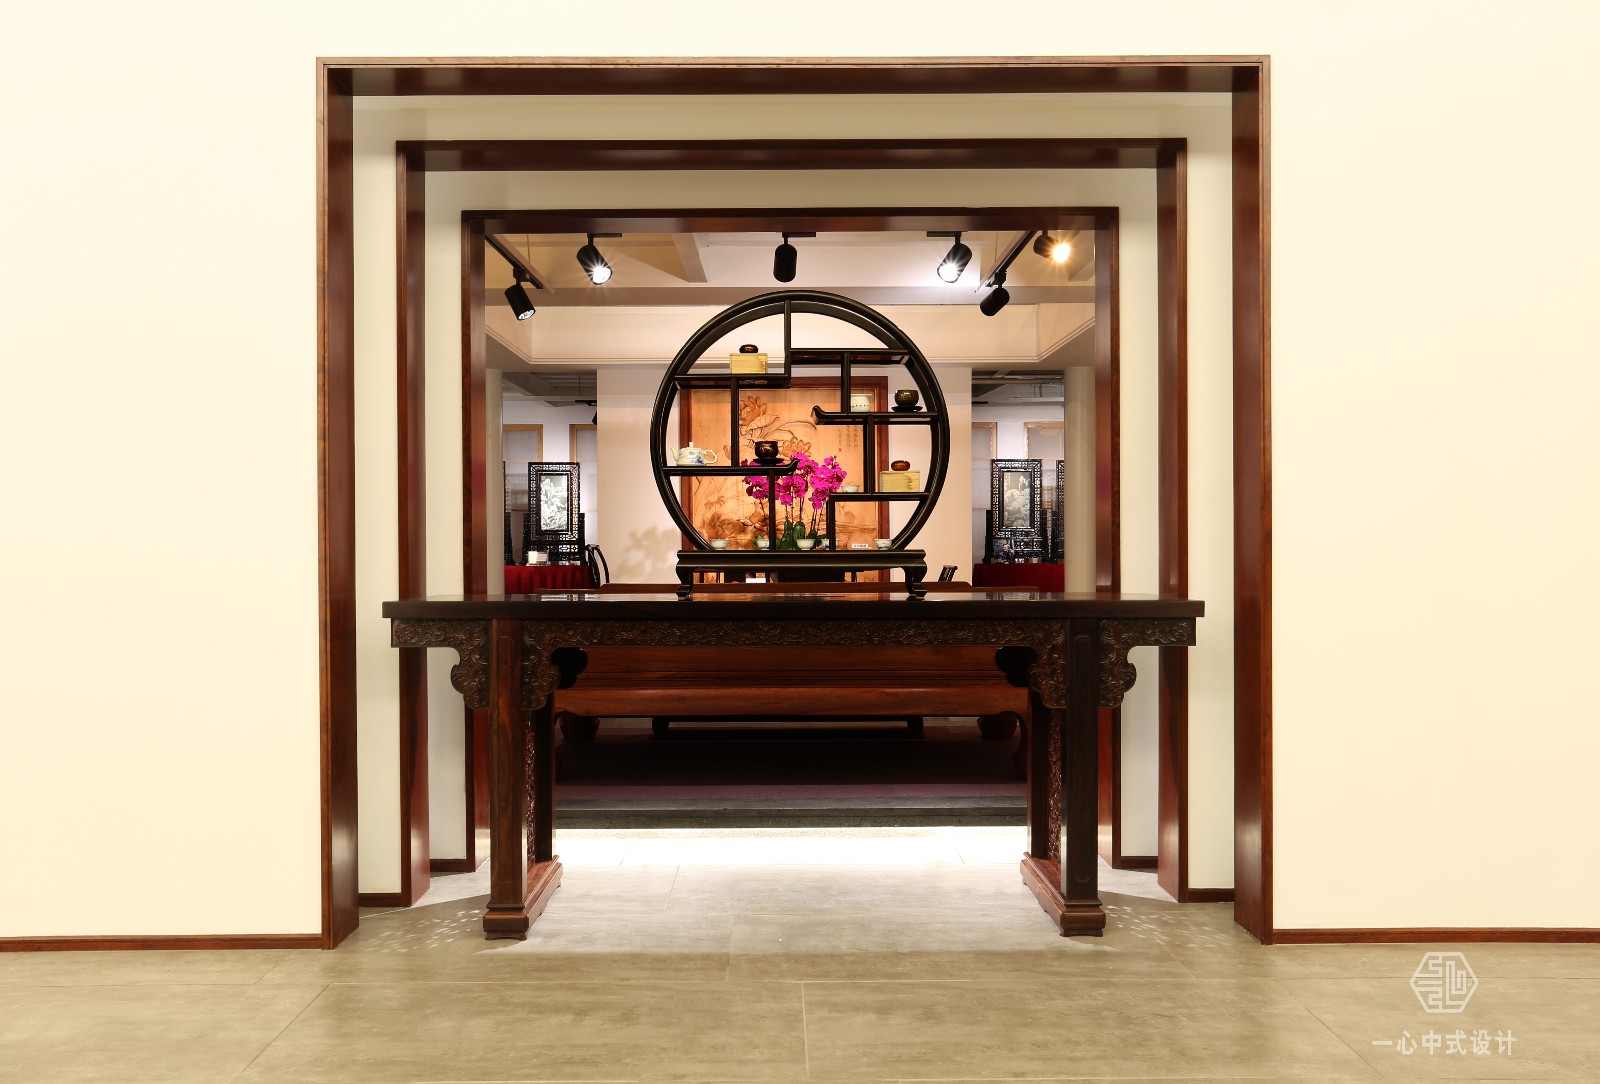 中式展厅设计 &#183; 龍熙堂红木艺术展厅